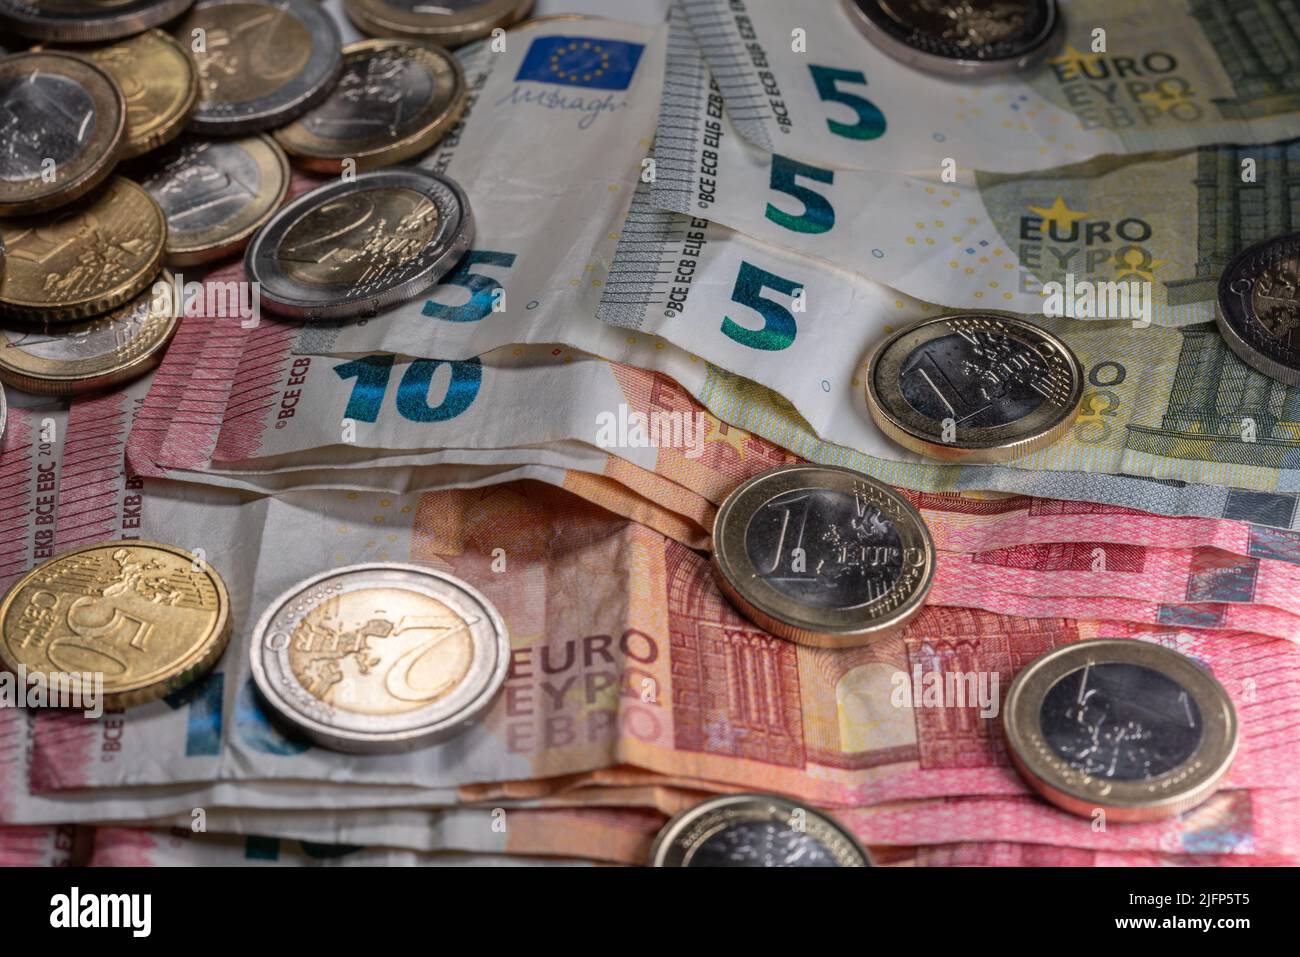 Stapel von zehn und fünf Euro-Scheinen mit Münzen darauf. Geld für Konjunkturimpulse Stockfoto